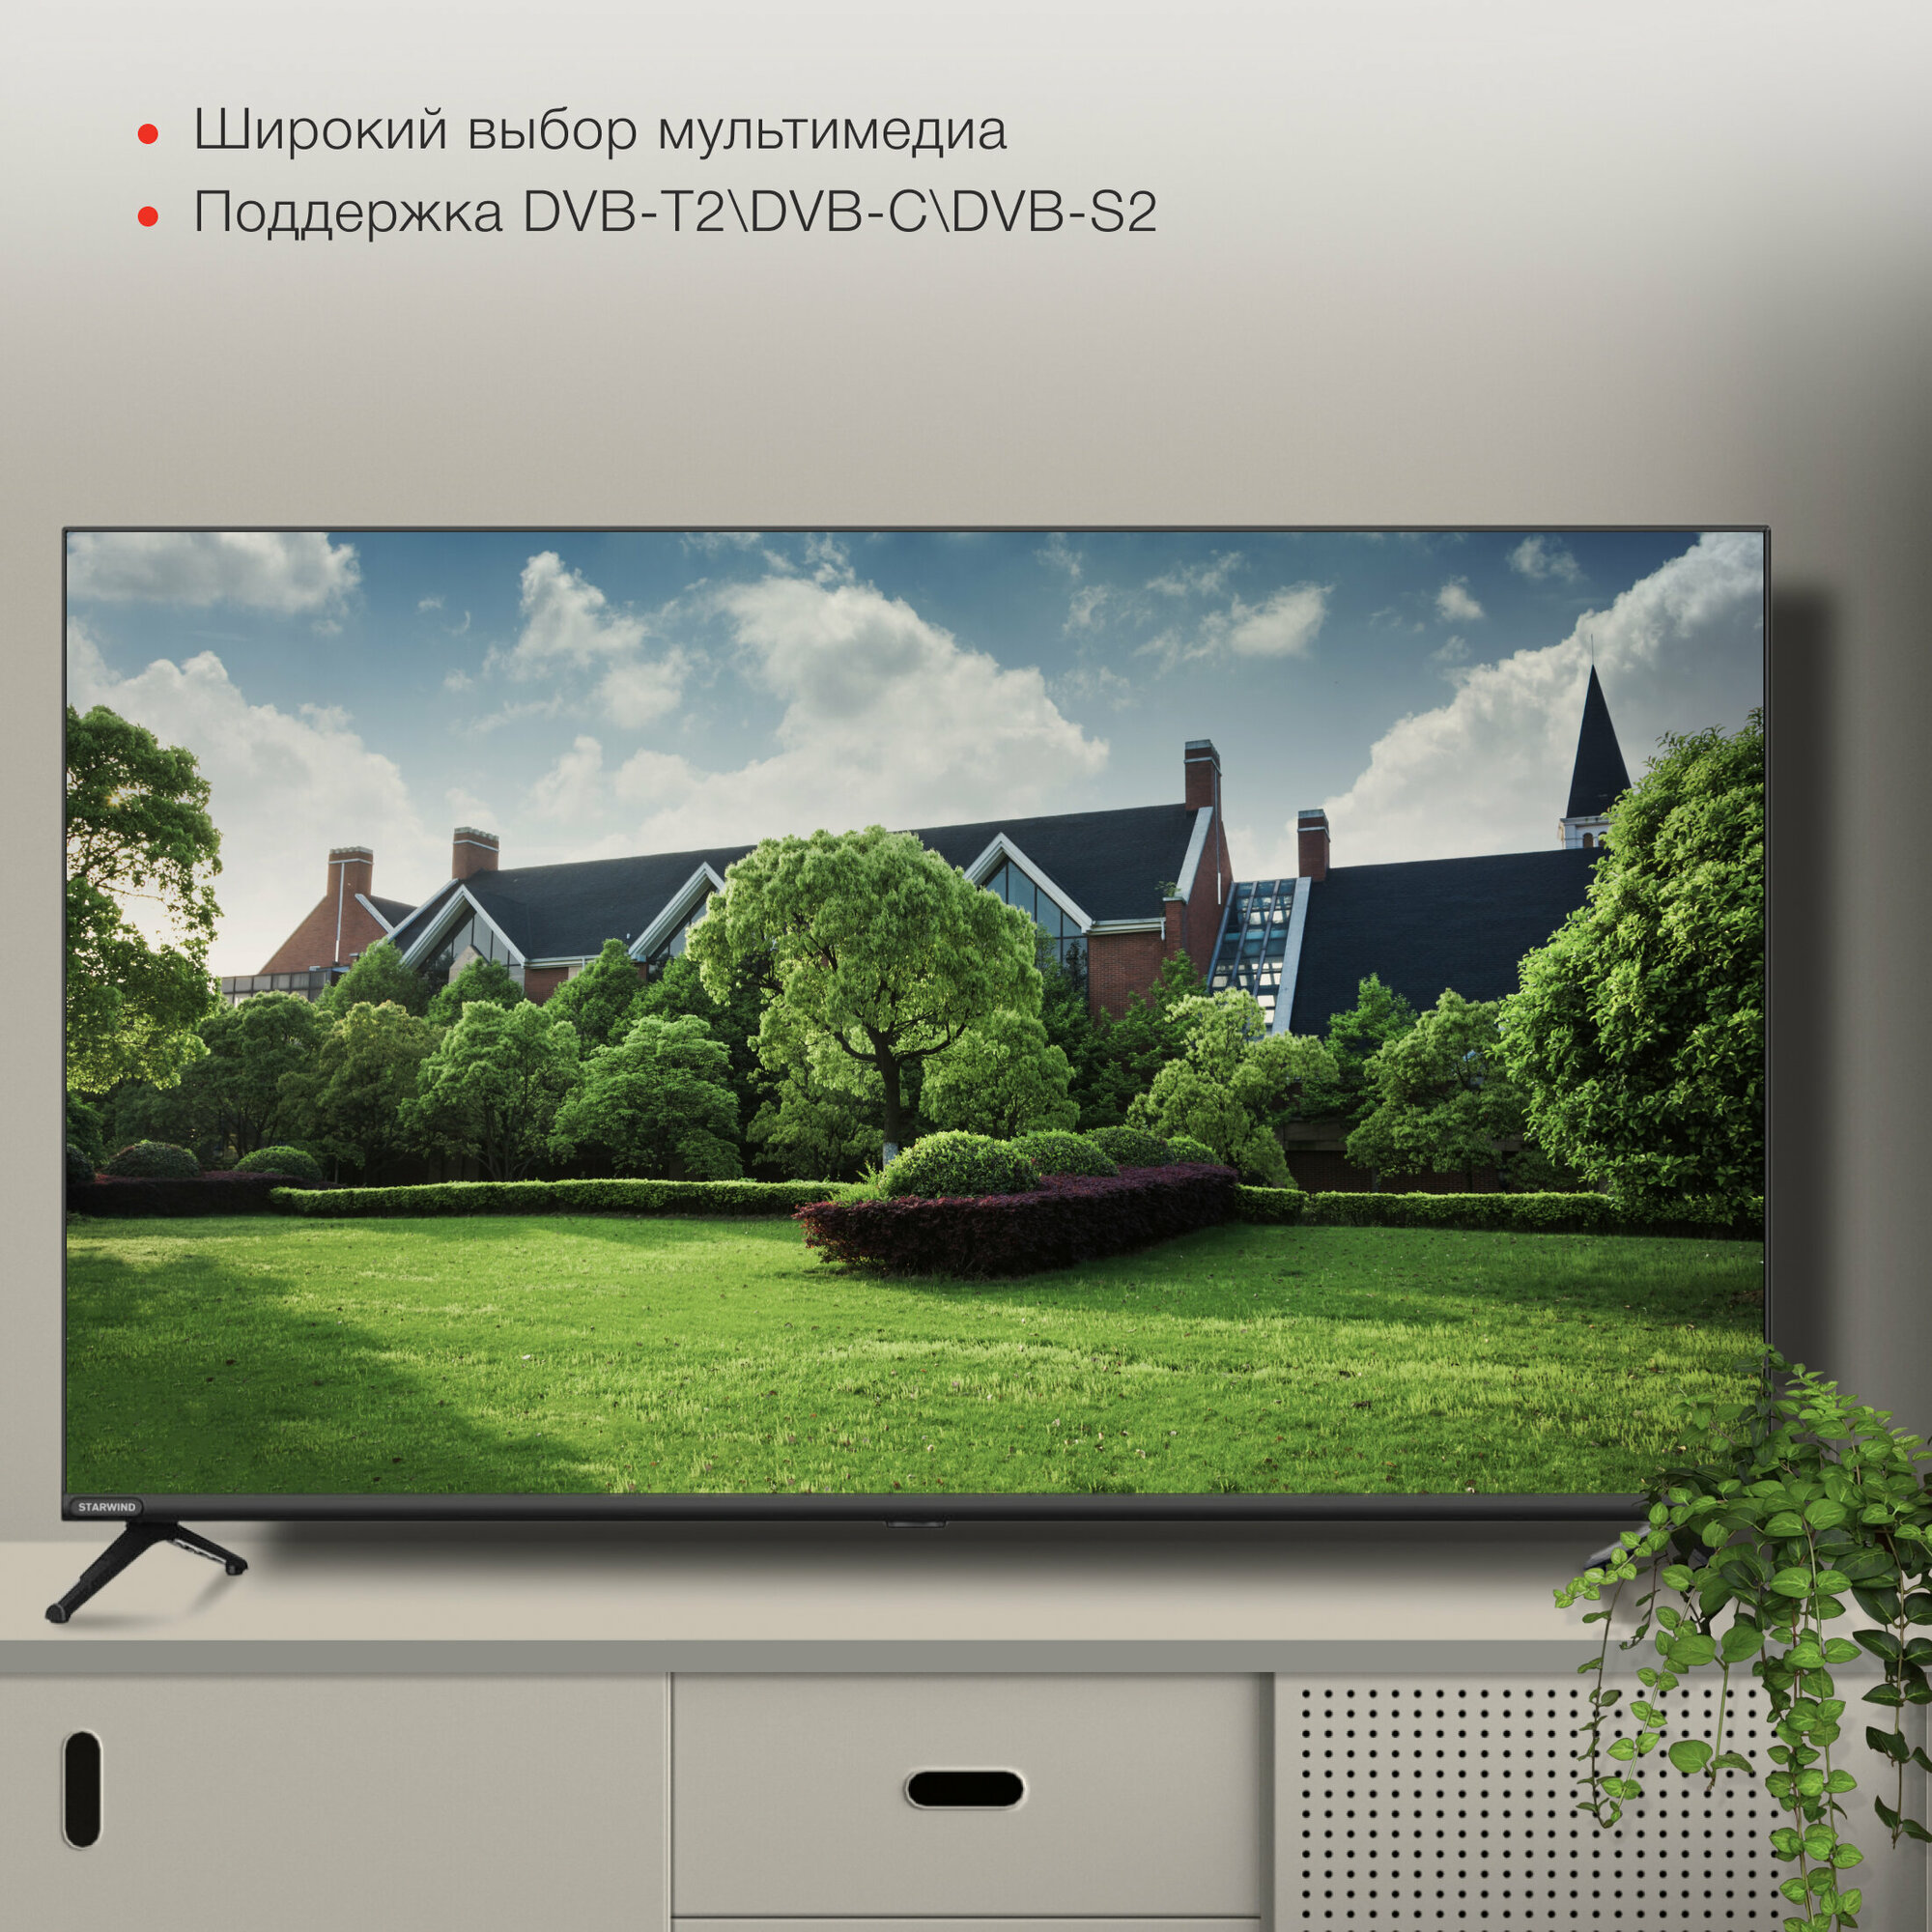 Телевизор Starwind Яндекс.ТВ SW-LED43SG300, 43", LED, FULL HD, Яндекс.ТВ, черный - фото №10